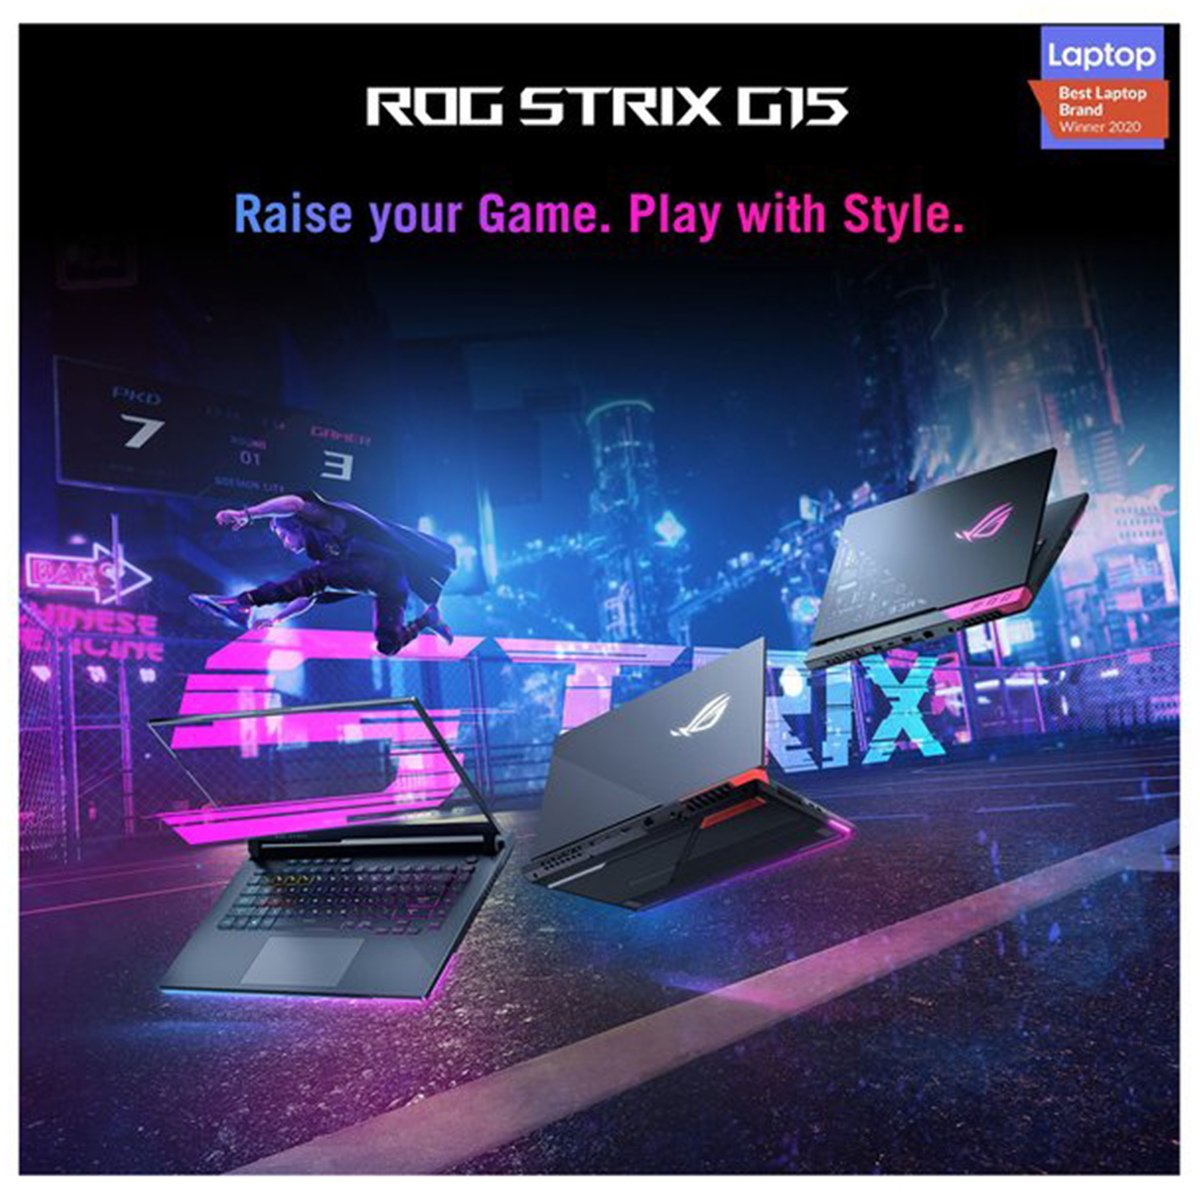 ASUS ROG Strix G513IH-HN026T,AMD Ryzen 7,16GB RAM,1TB SSD,4GB VRAM,15.6" FHD, Windows 10,English/Arabic Keyboard